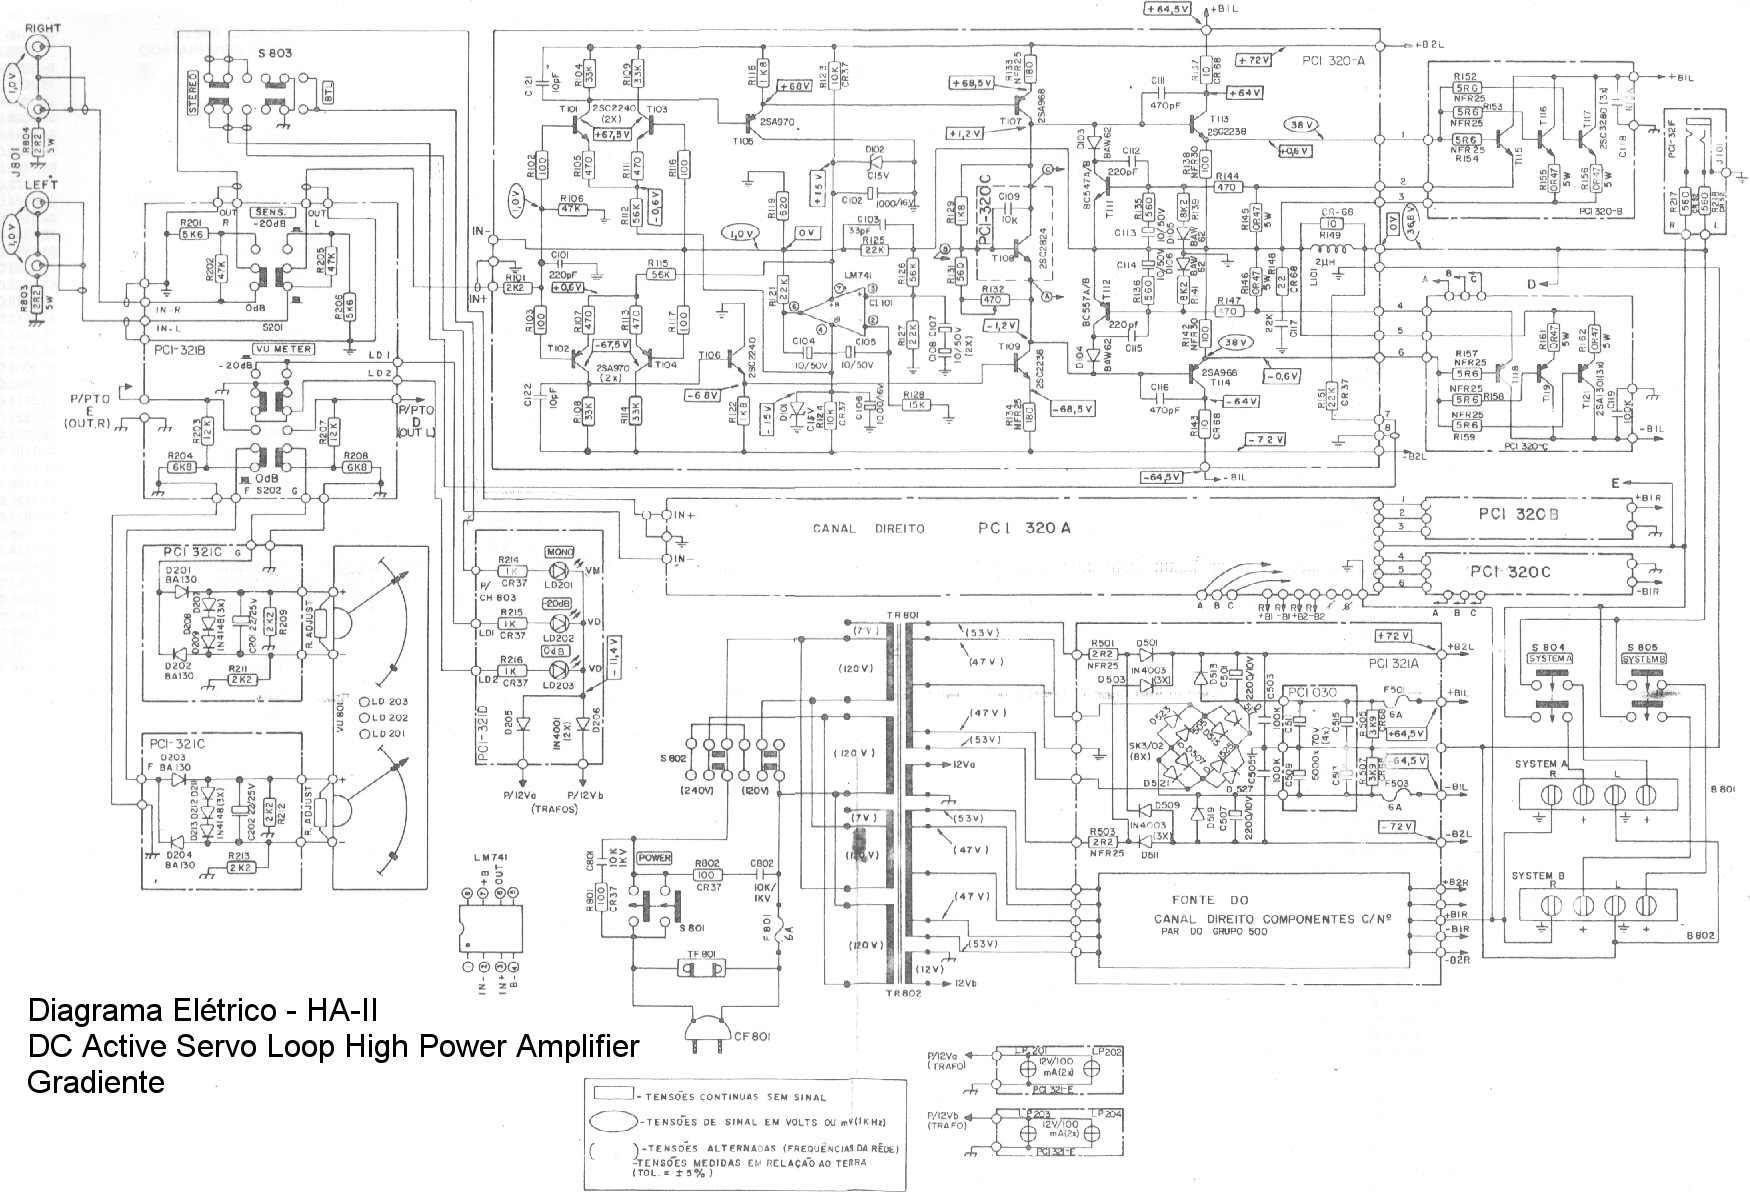 Gradiente AH-II Schematic diagram or Diagrama esquemático.
DC Active Servo Loop High Power Amplifier.